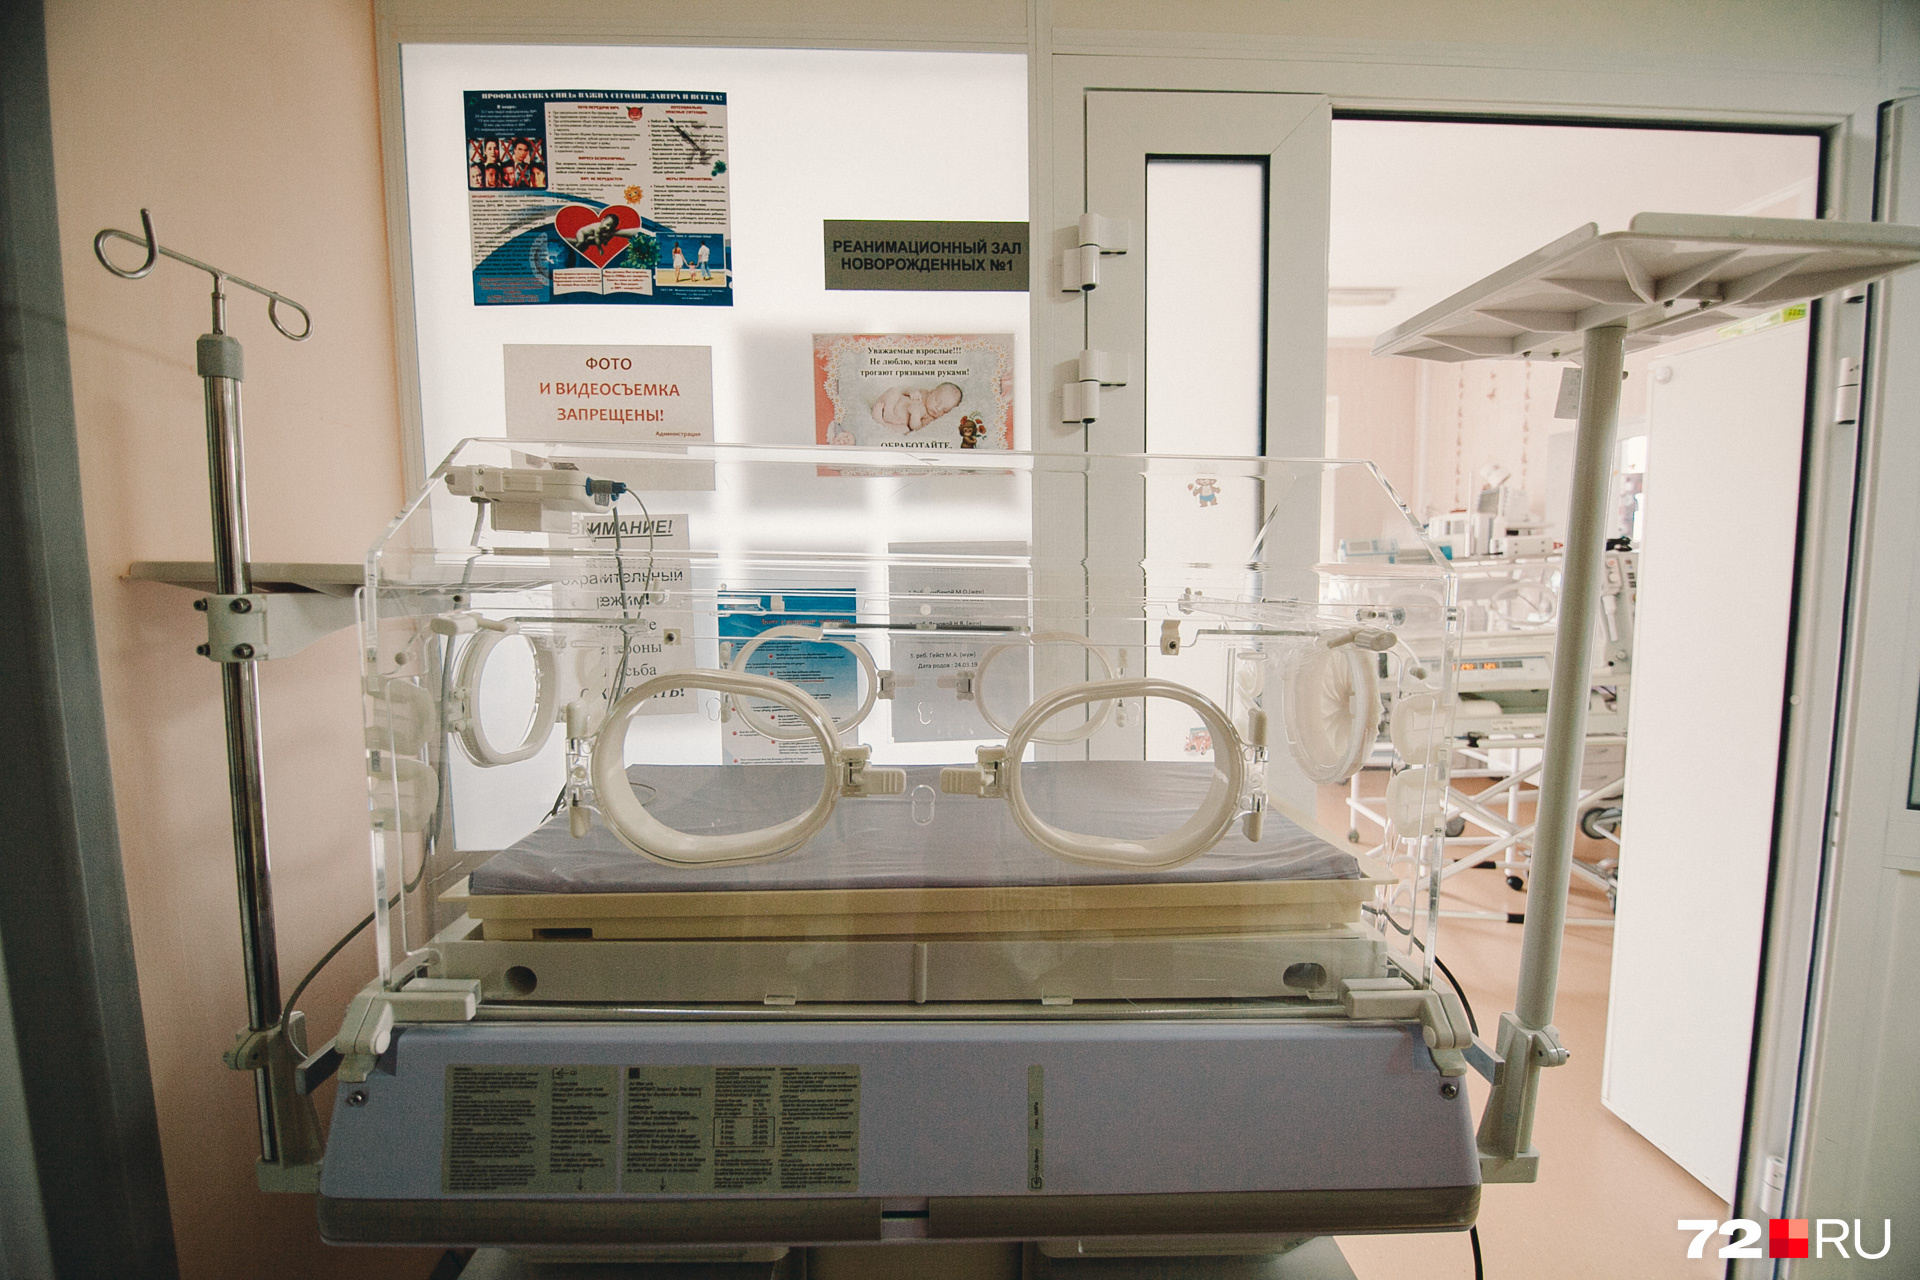 К кувезу, или, проще сказать, инкубатору, с прозрачными стёклами прикрепляют специальную аппаратуру для поддержки жизненно важных органов и функций малюсенького ребёнка. Врачи через специальные круглые окошки осматривают маленького пациента 